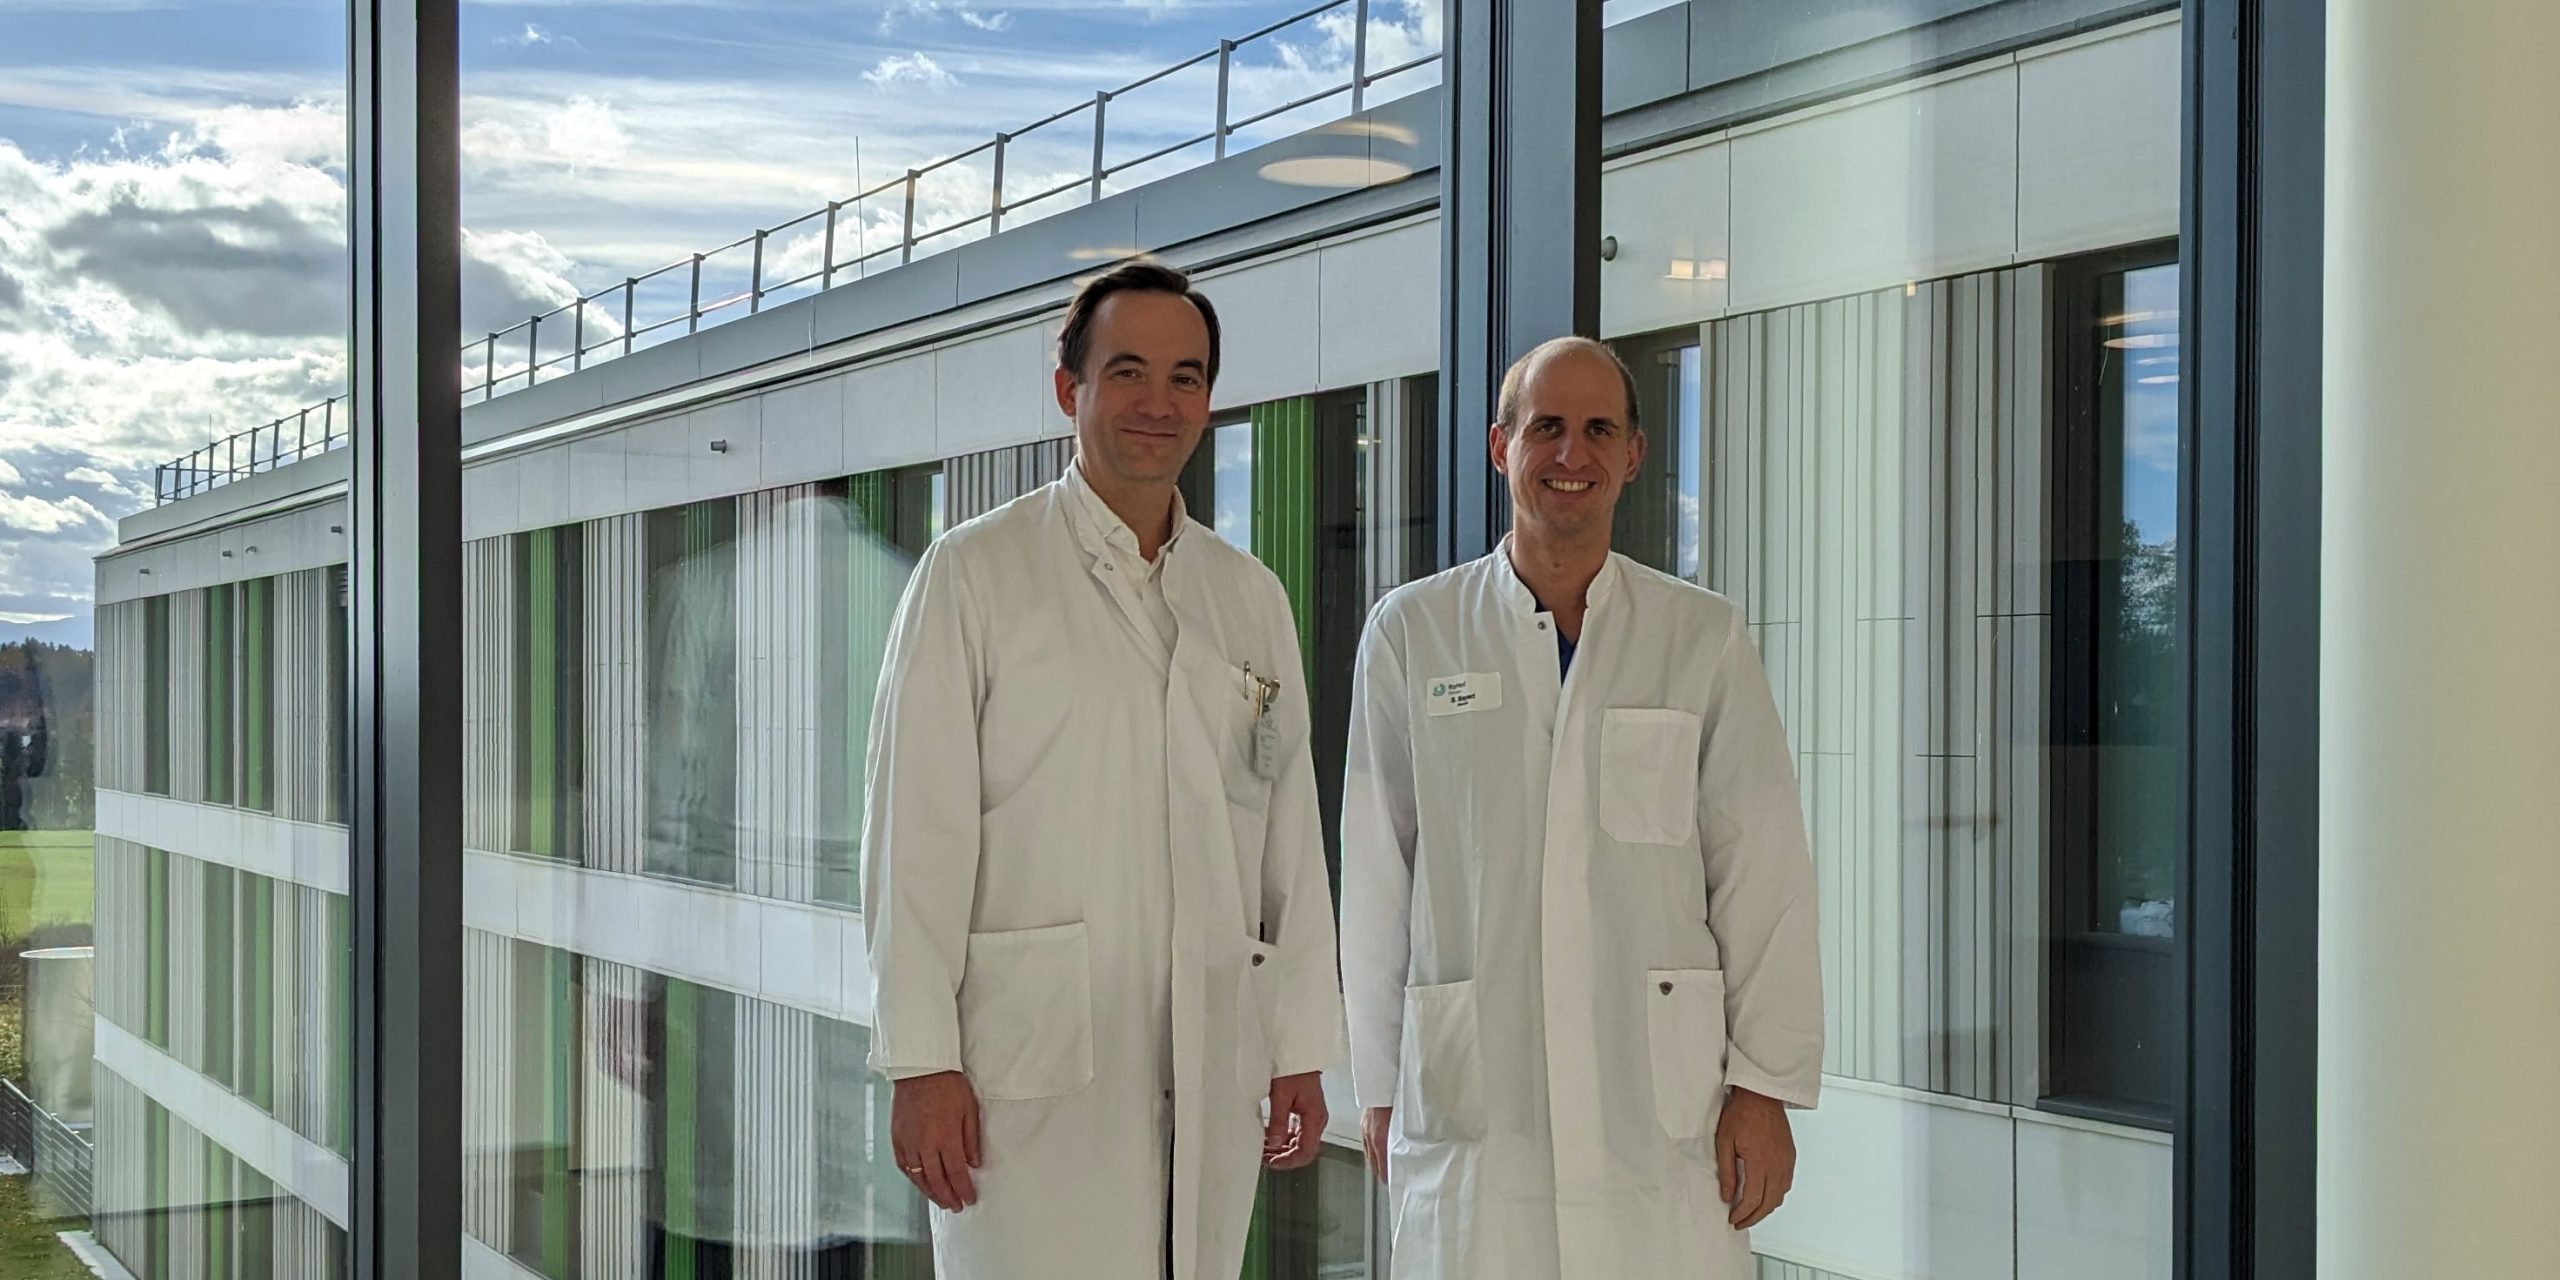 zeigt:  Dr. Tobias Winkler (links), kbo-Chefarzt der Klinik für Neurologie und Dr. Stephan Bayerl (re), RoMed-Leiter der Zentralen Notaufnahme. Foto: kbo-Inn-Salzach Klinikum